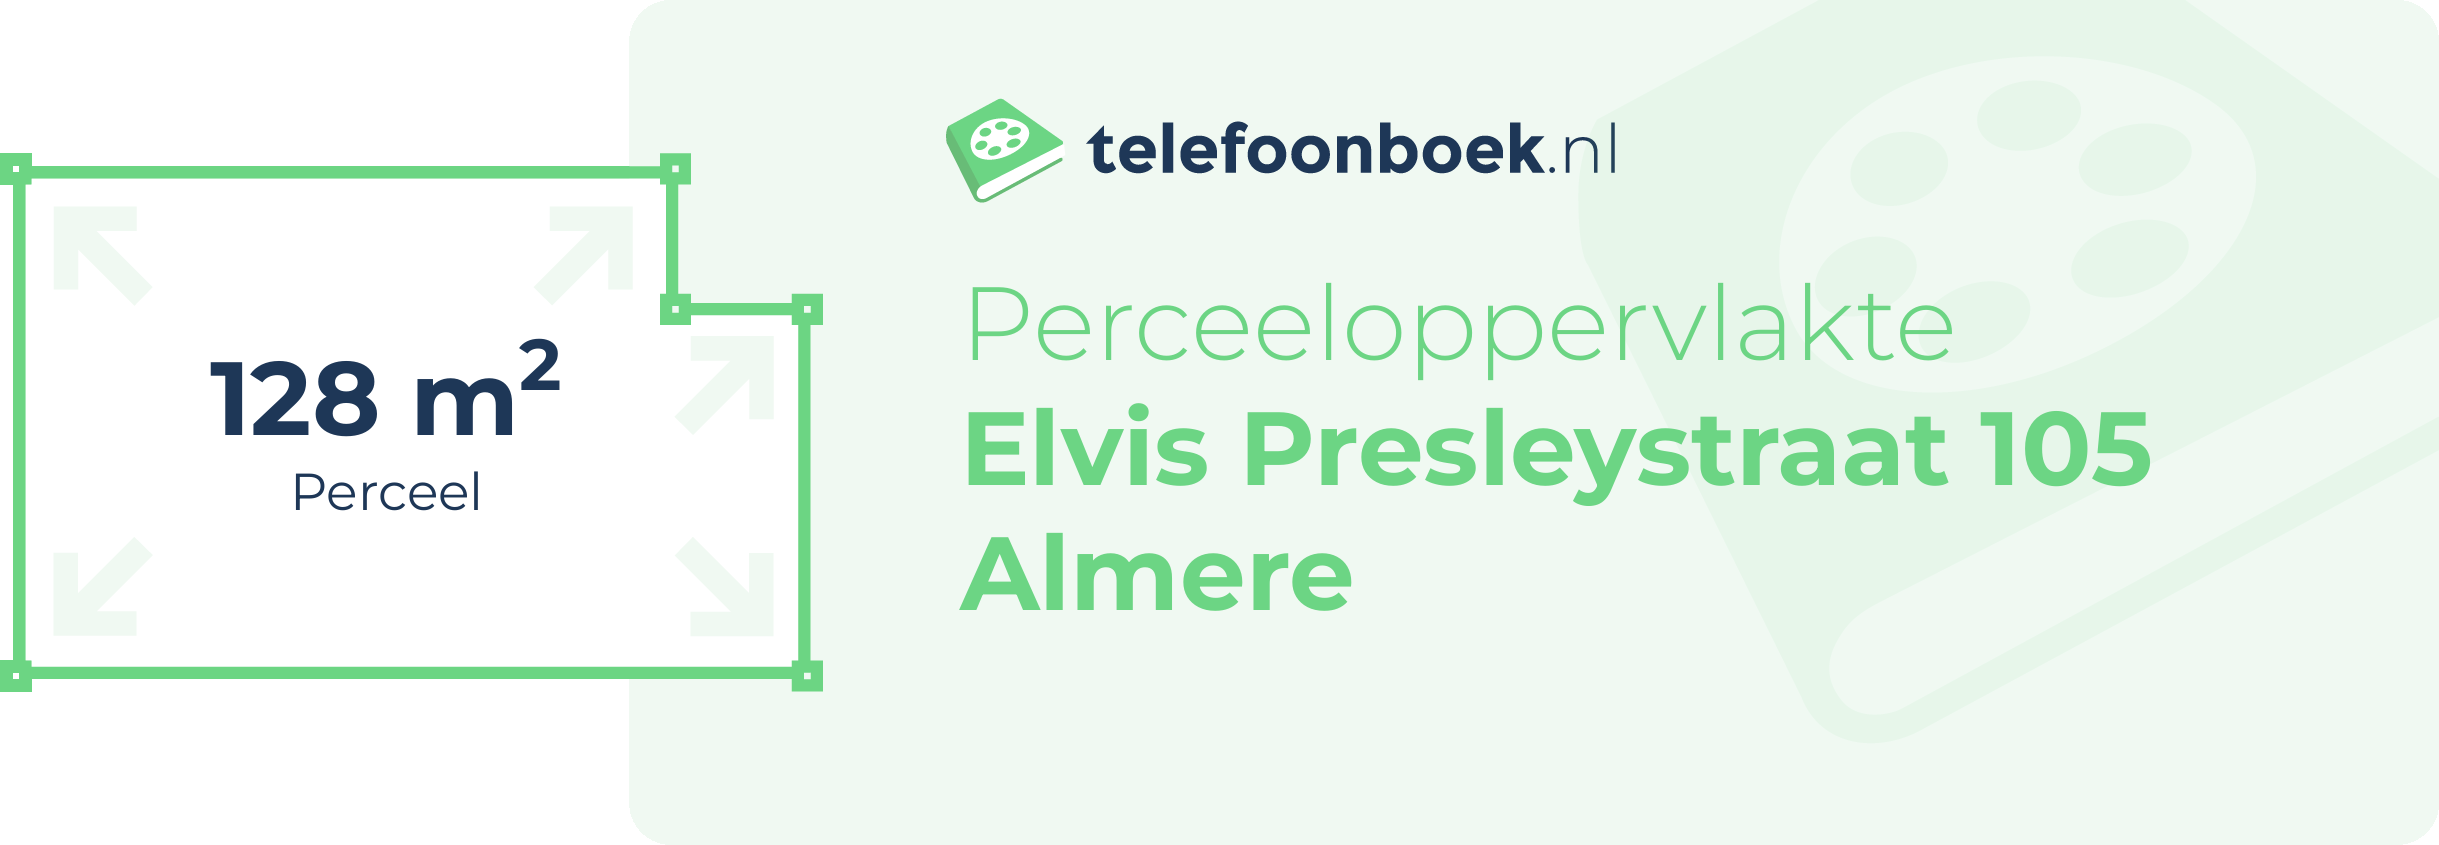 Perceeloppervlakte Elvis Presleystraat 105 Almere